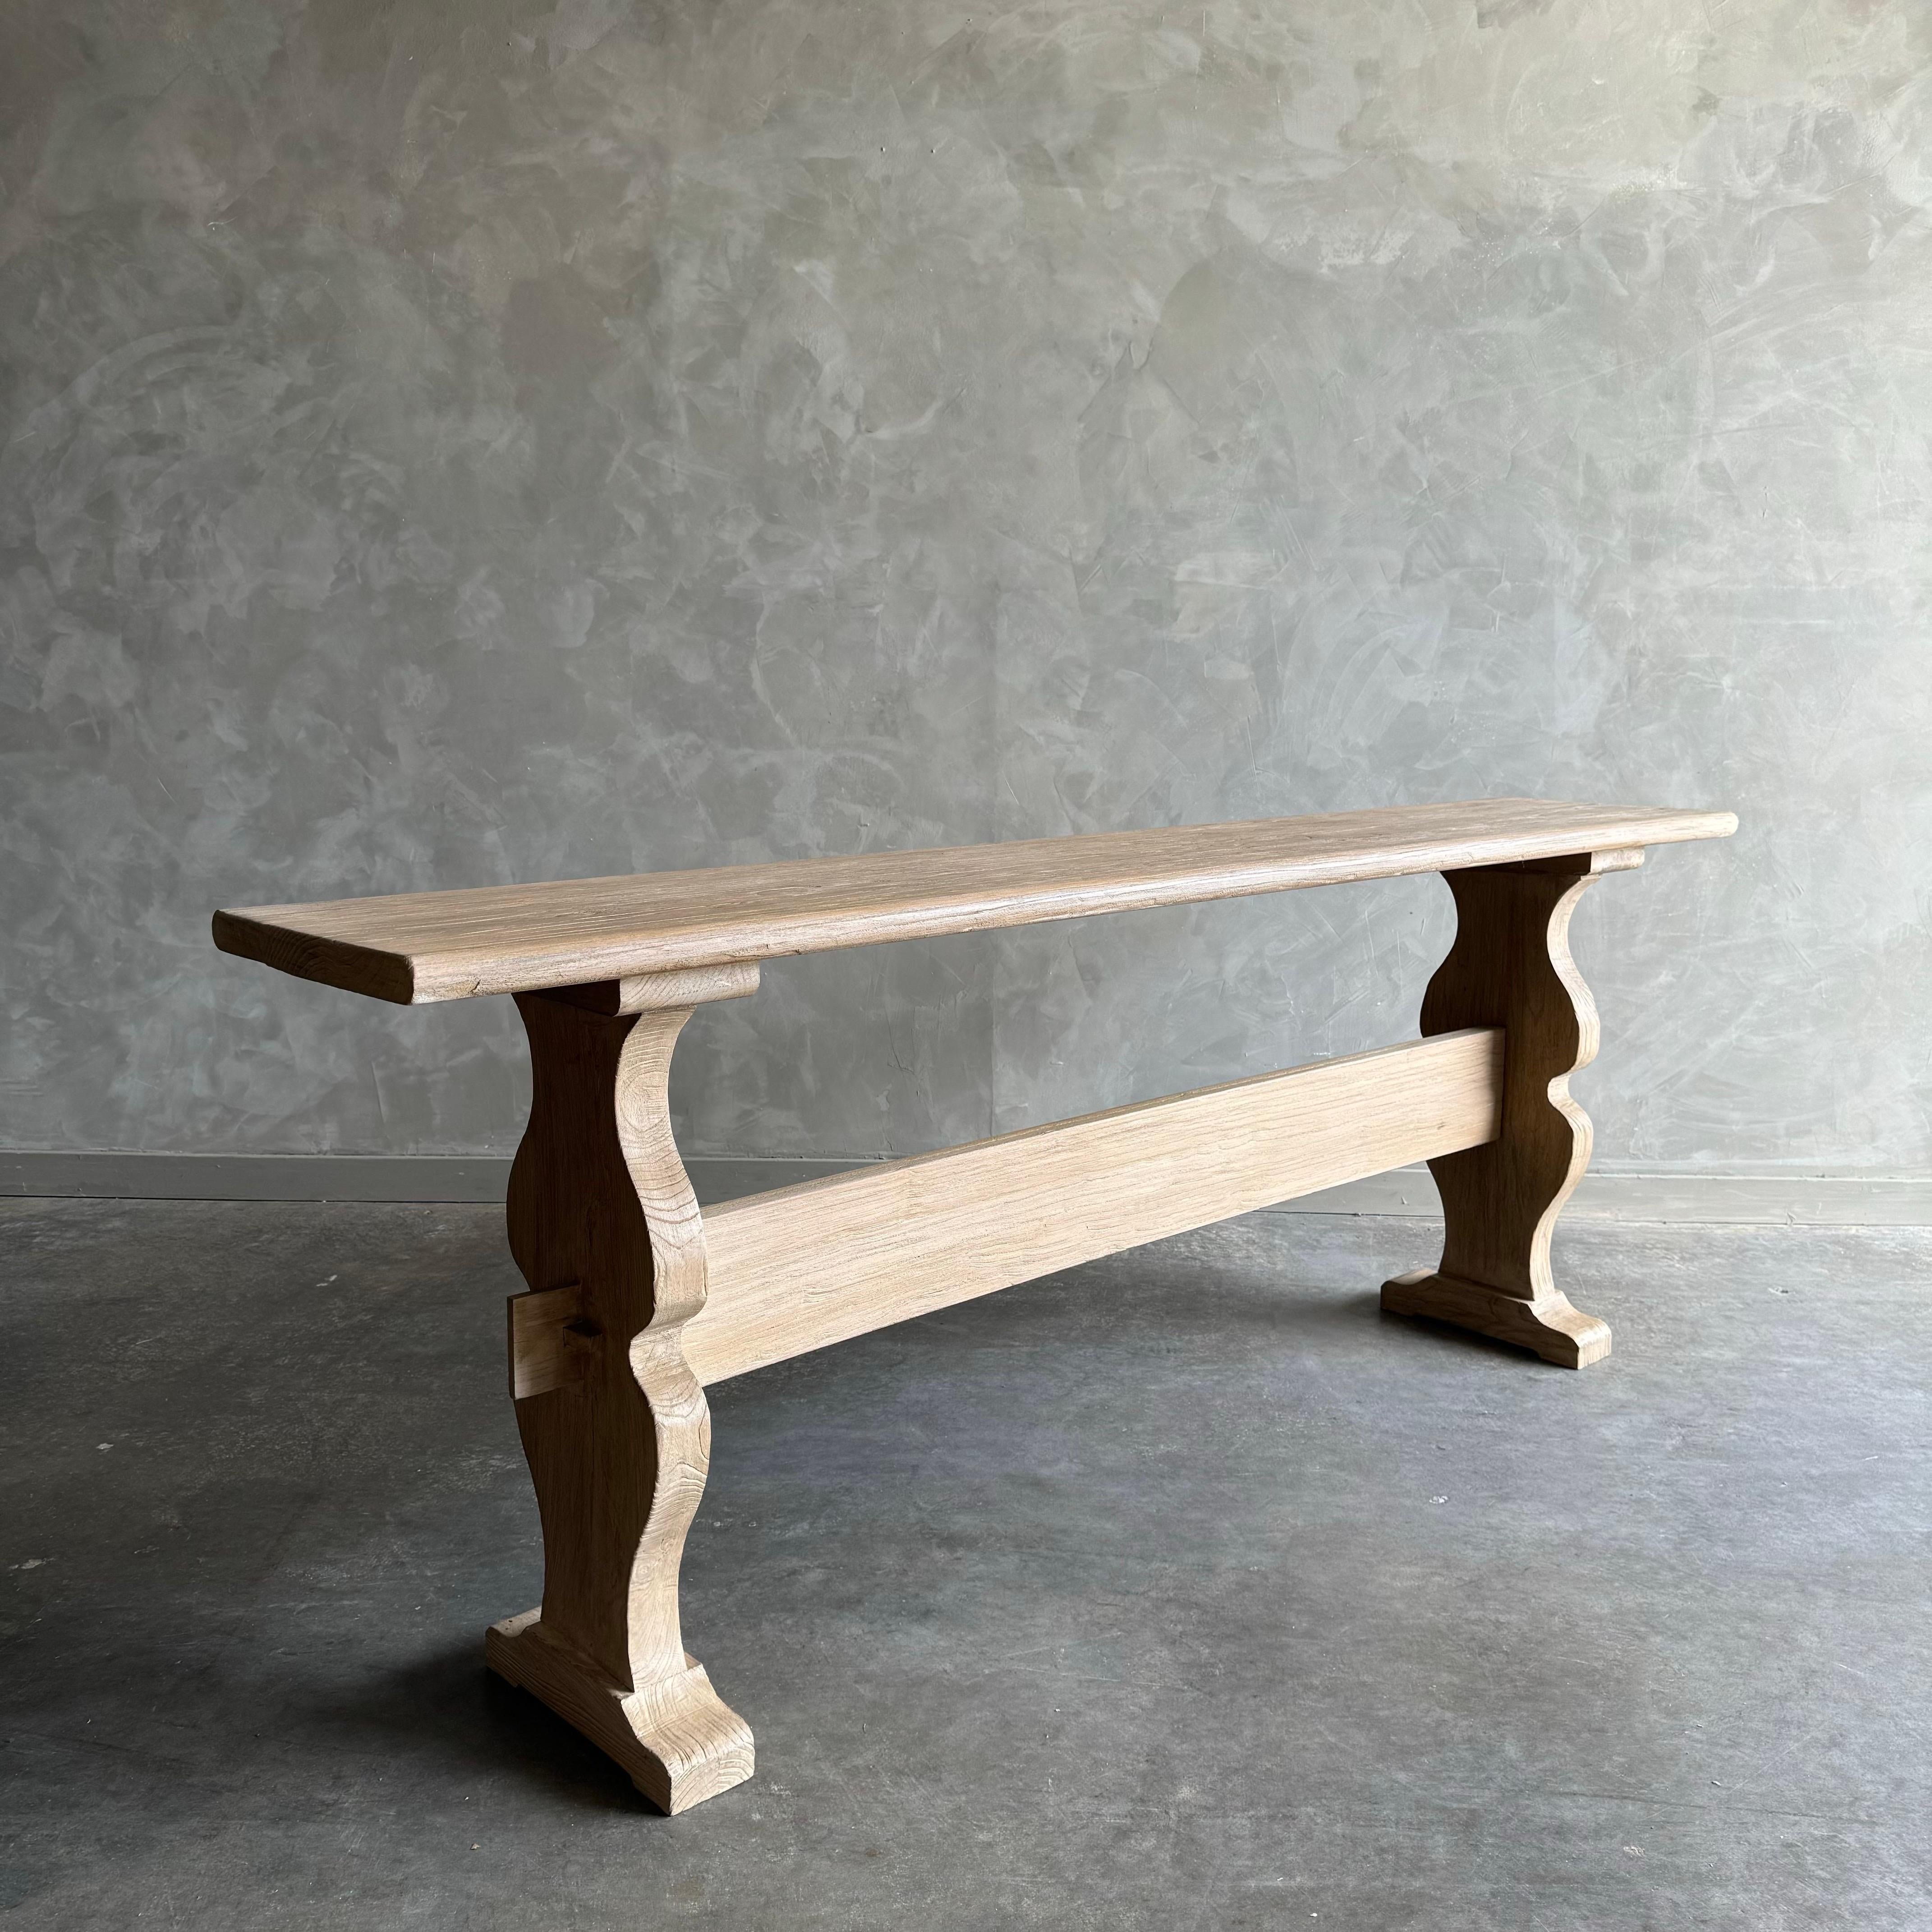 Die Konsole aus aufgearbeitetem Ulmenholz ist wunderschön verarbeitet und der perfekte Tisch für jeden Raum. Da dies aus alten, wiederverwerteten Materialien hergestellt wird, kann es einige Unvollkommenheiten in dem Stück oder der Maserung des